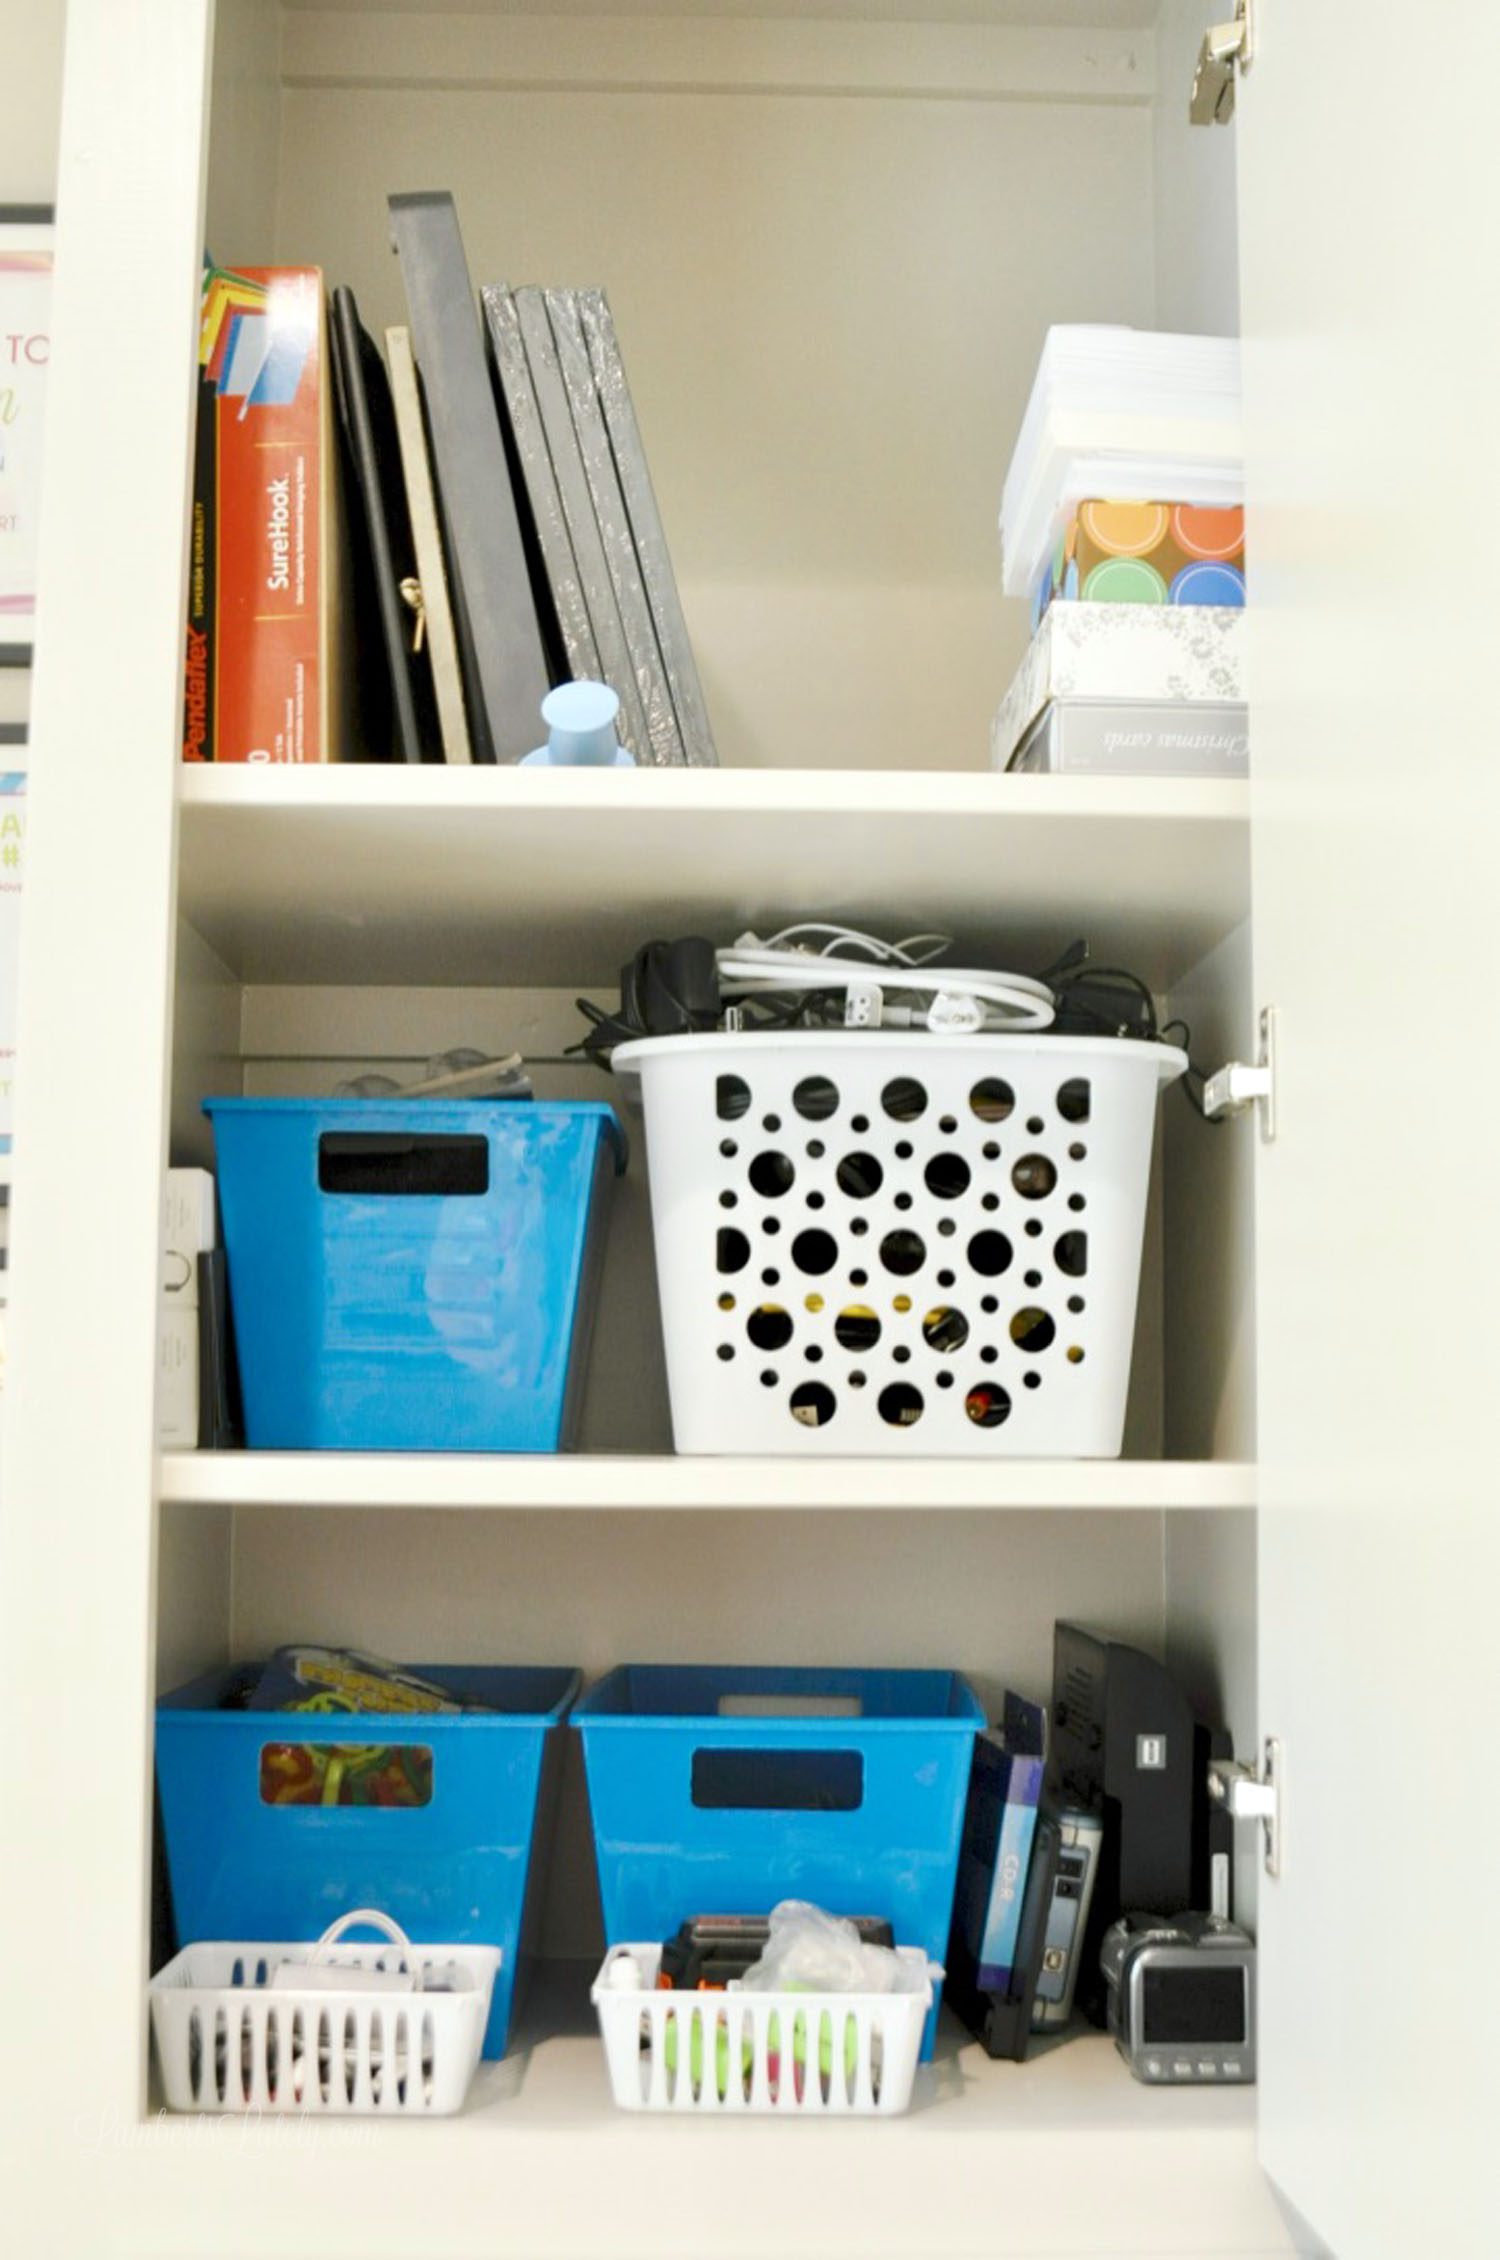 plastic organizers in a shelf.